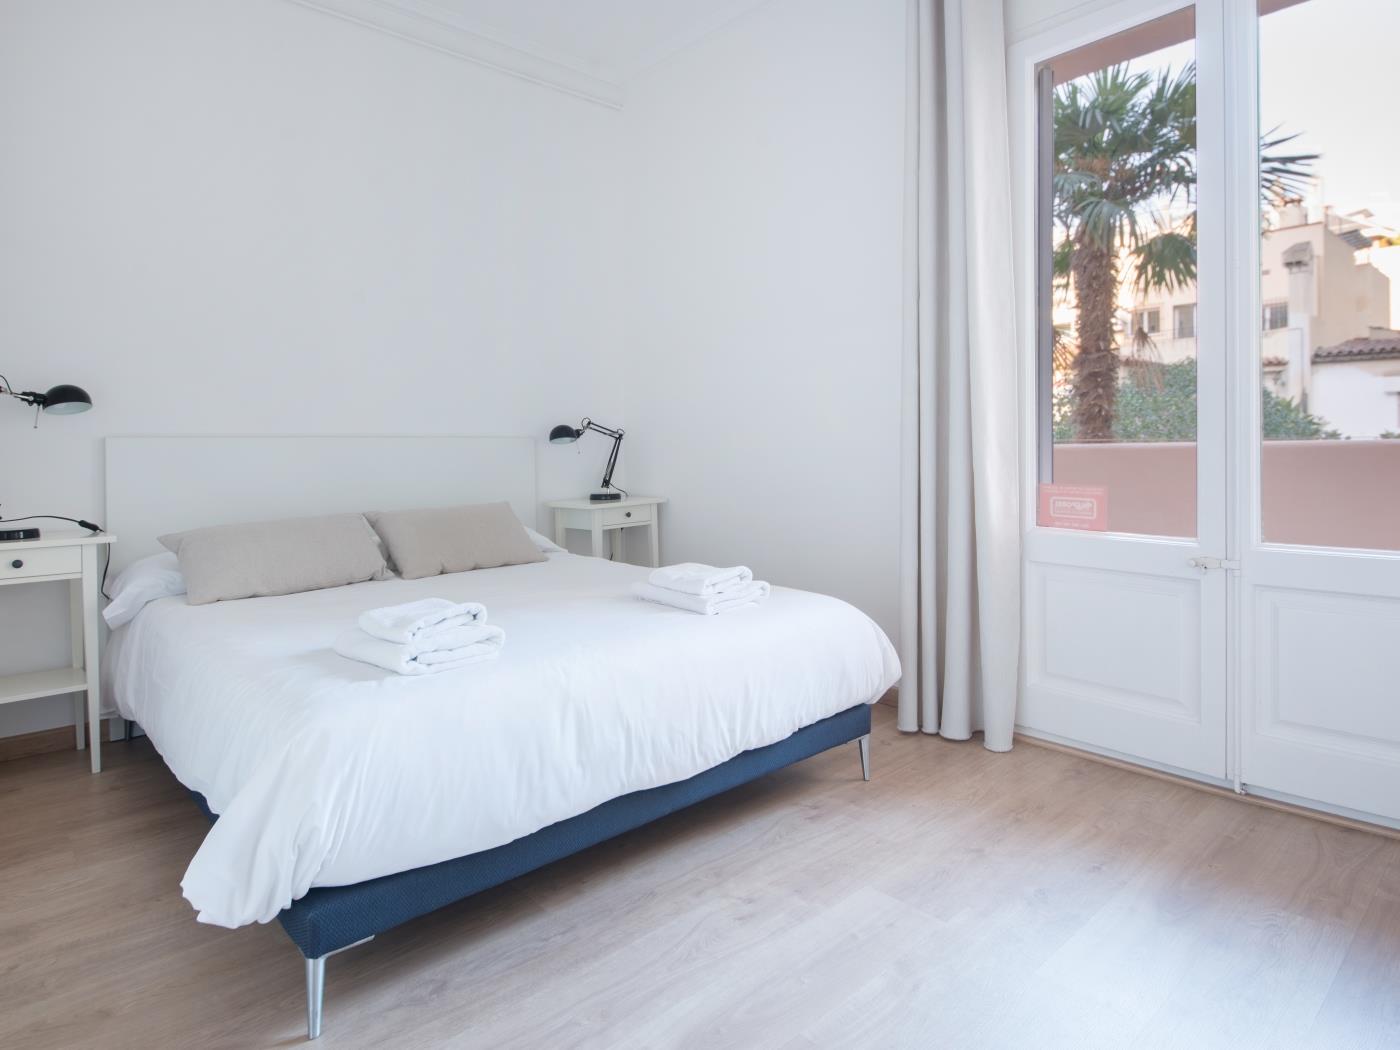 Möblierte und ausgestattete Wohnung für Jahreszeiten in Putxet mit Terrasse - My Space Barcelona Appartementen